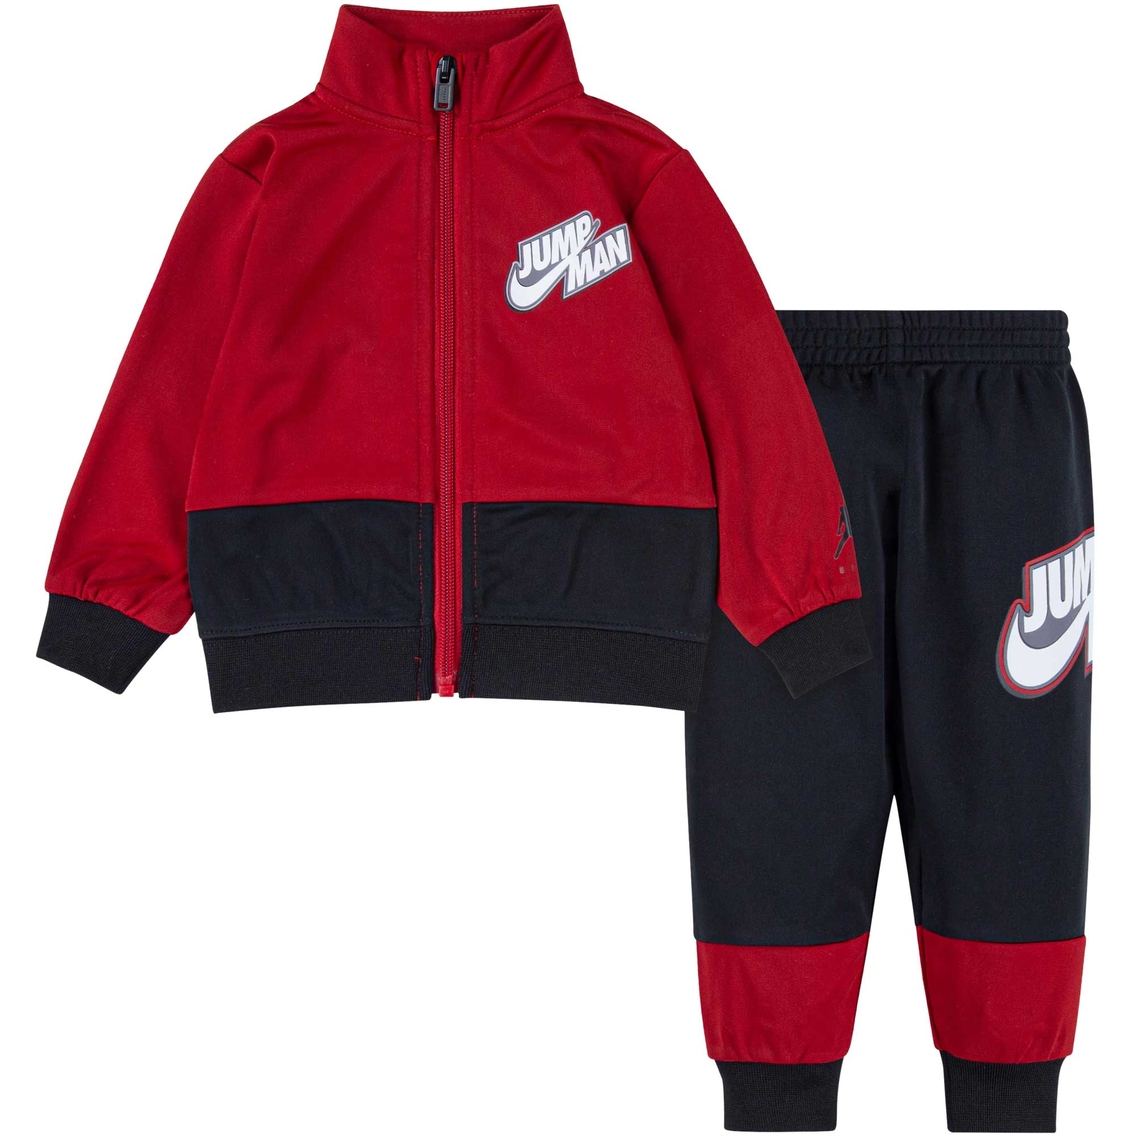 Jordan Infant Boys Jumpman By Nike Tricot Set | Baby Boy 0-24 Months ...